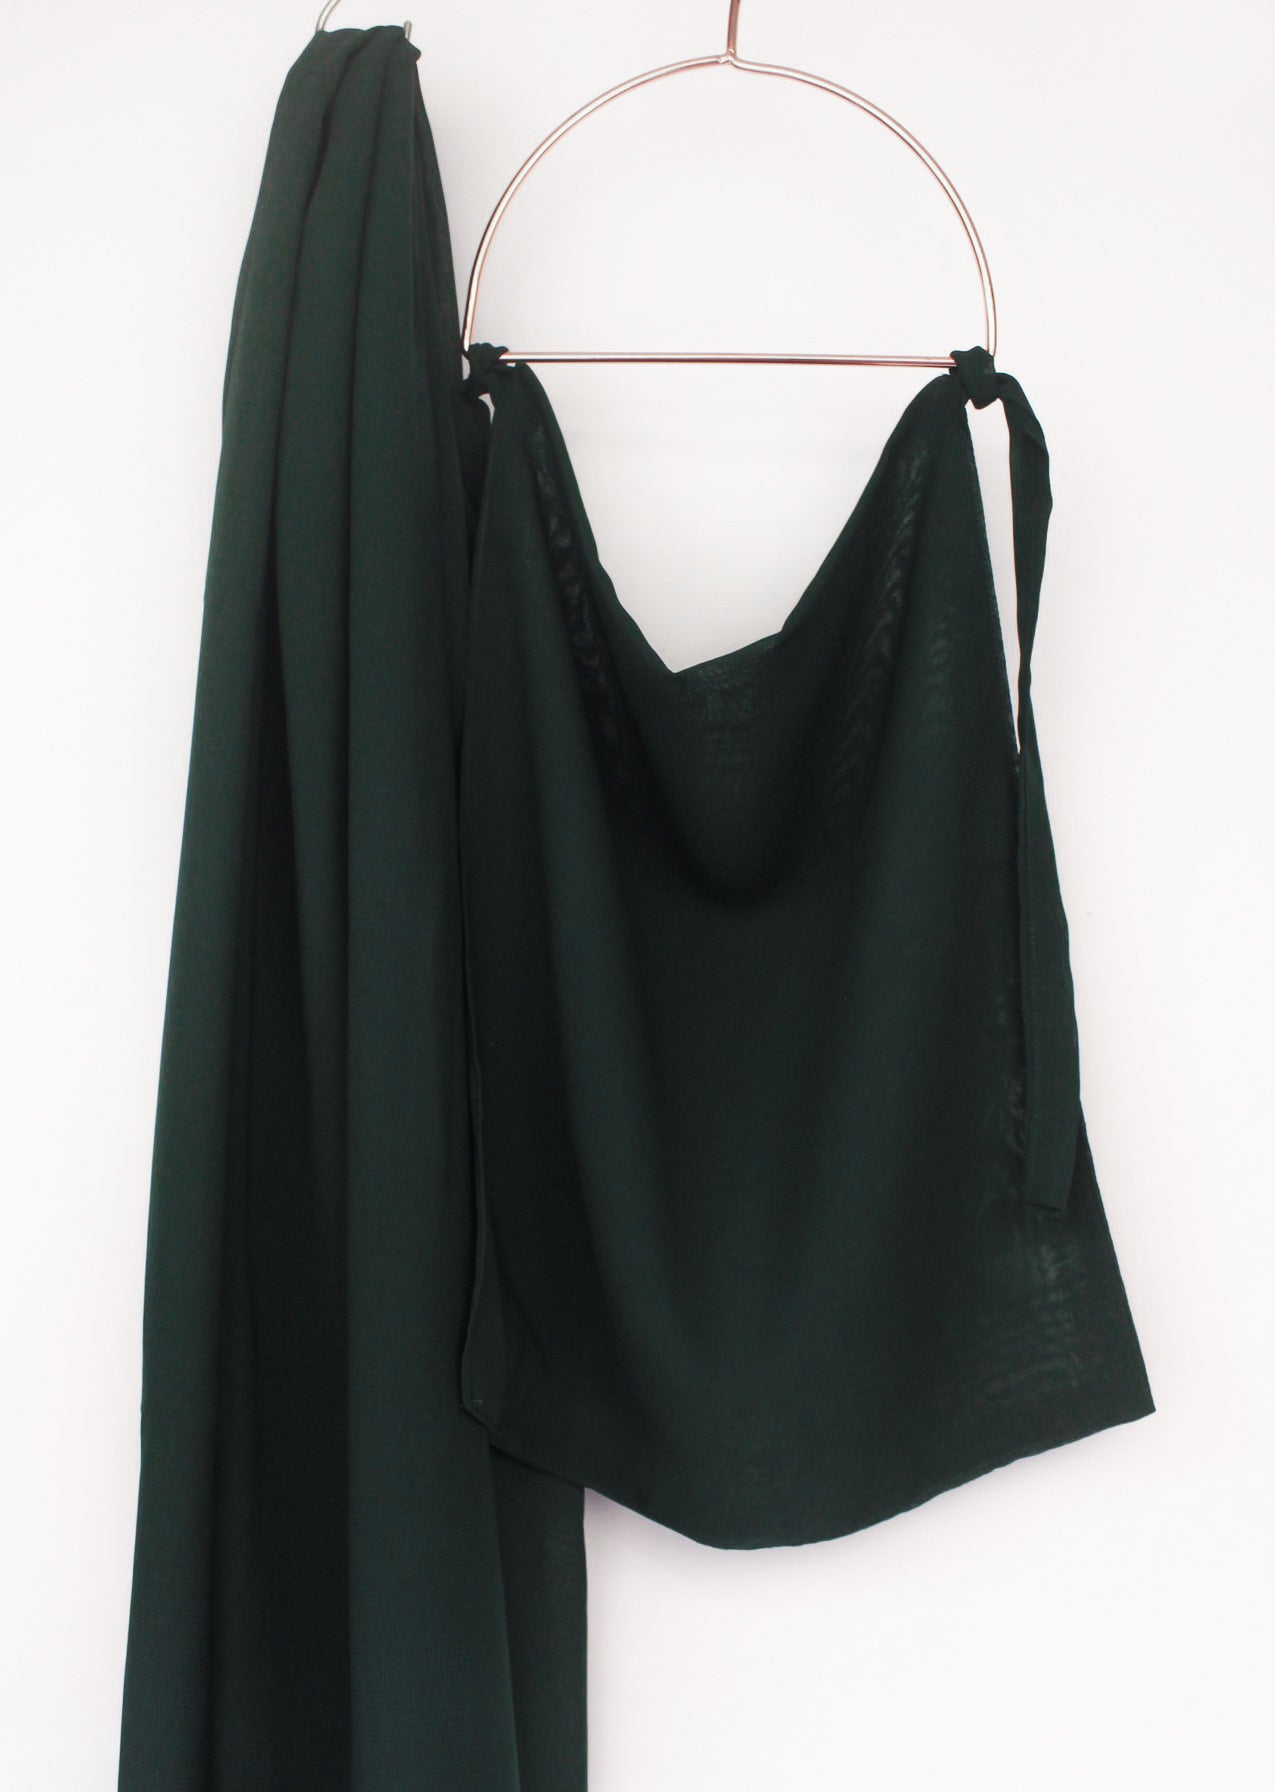 Georgette - Bottle Green – The Women Zone - A Hijab Brand